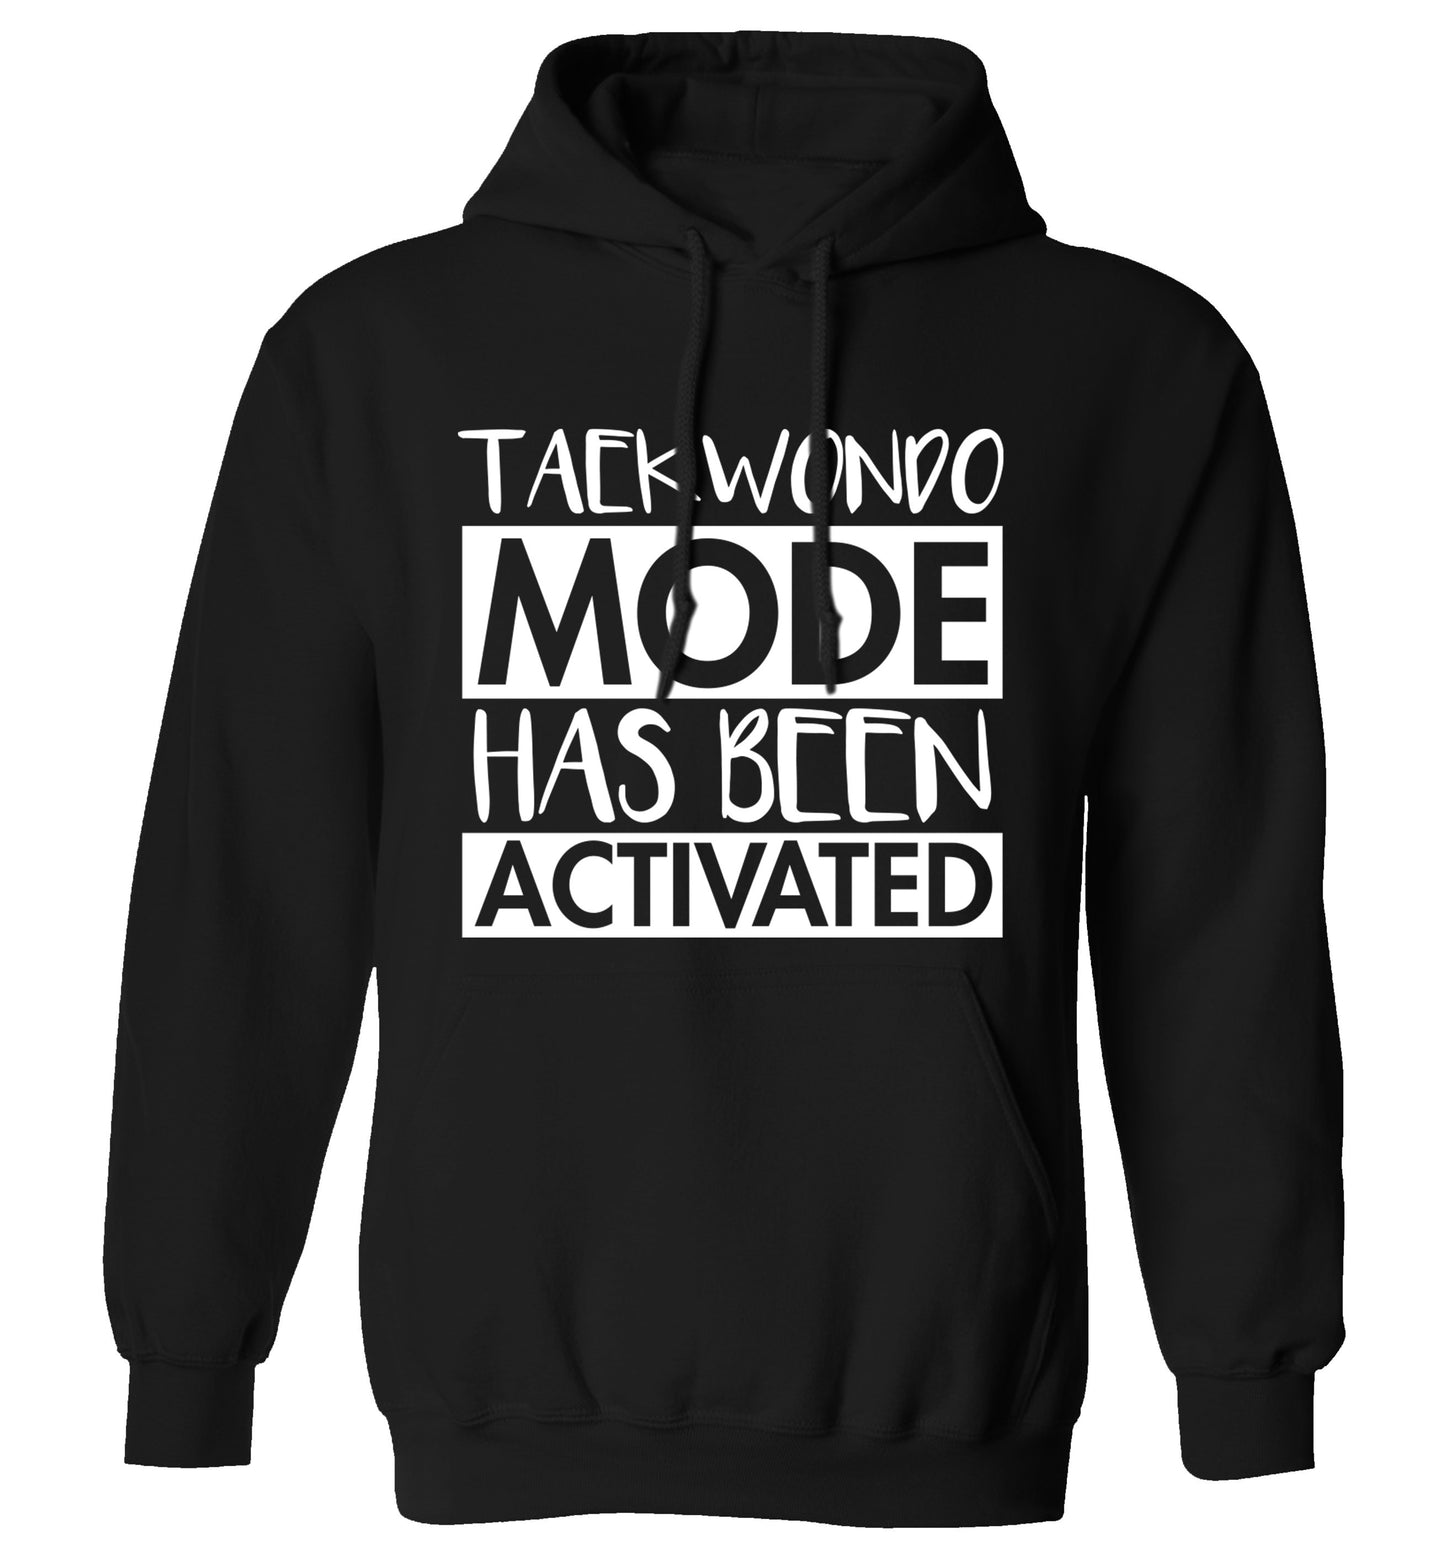 Taekwondo mode activated adults unisex black hoodie 2XL